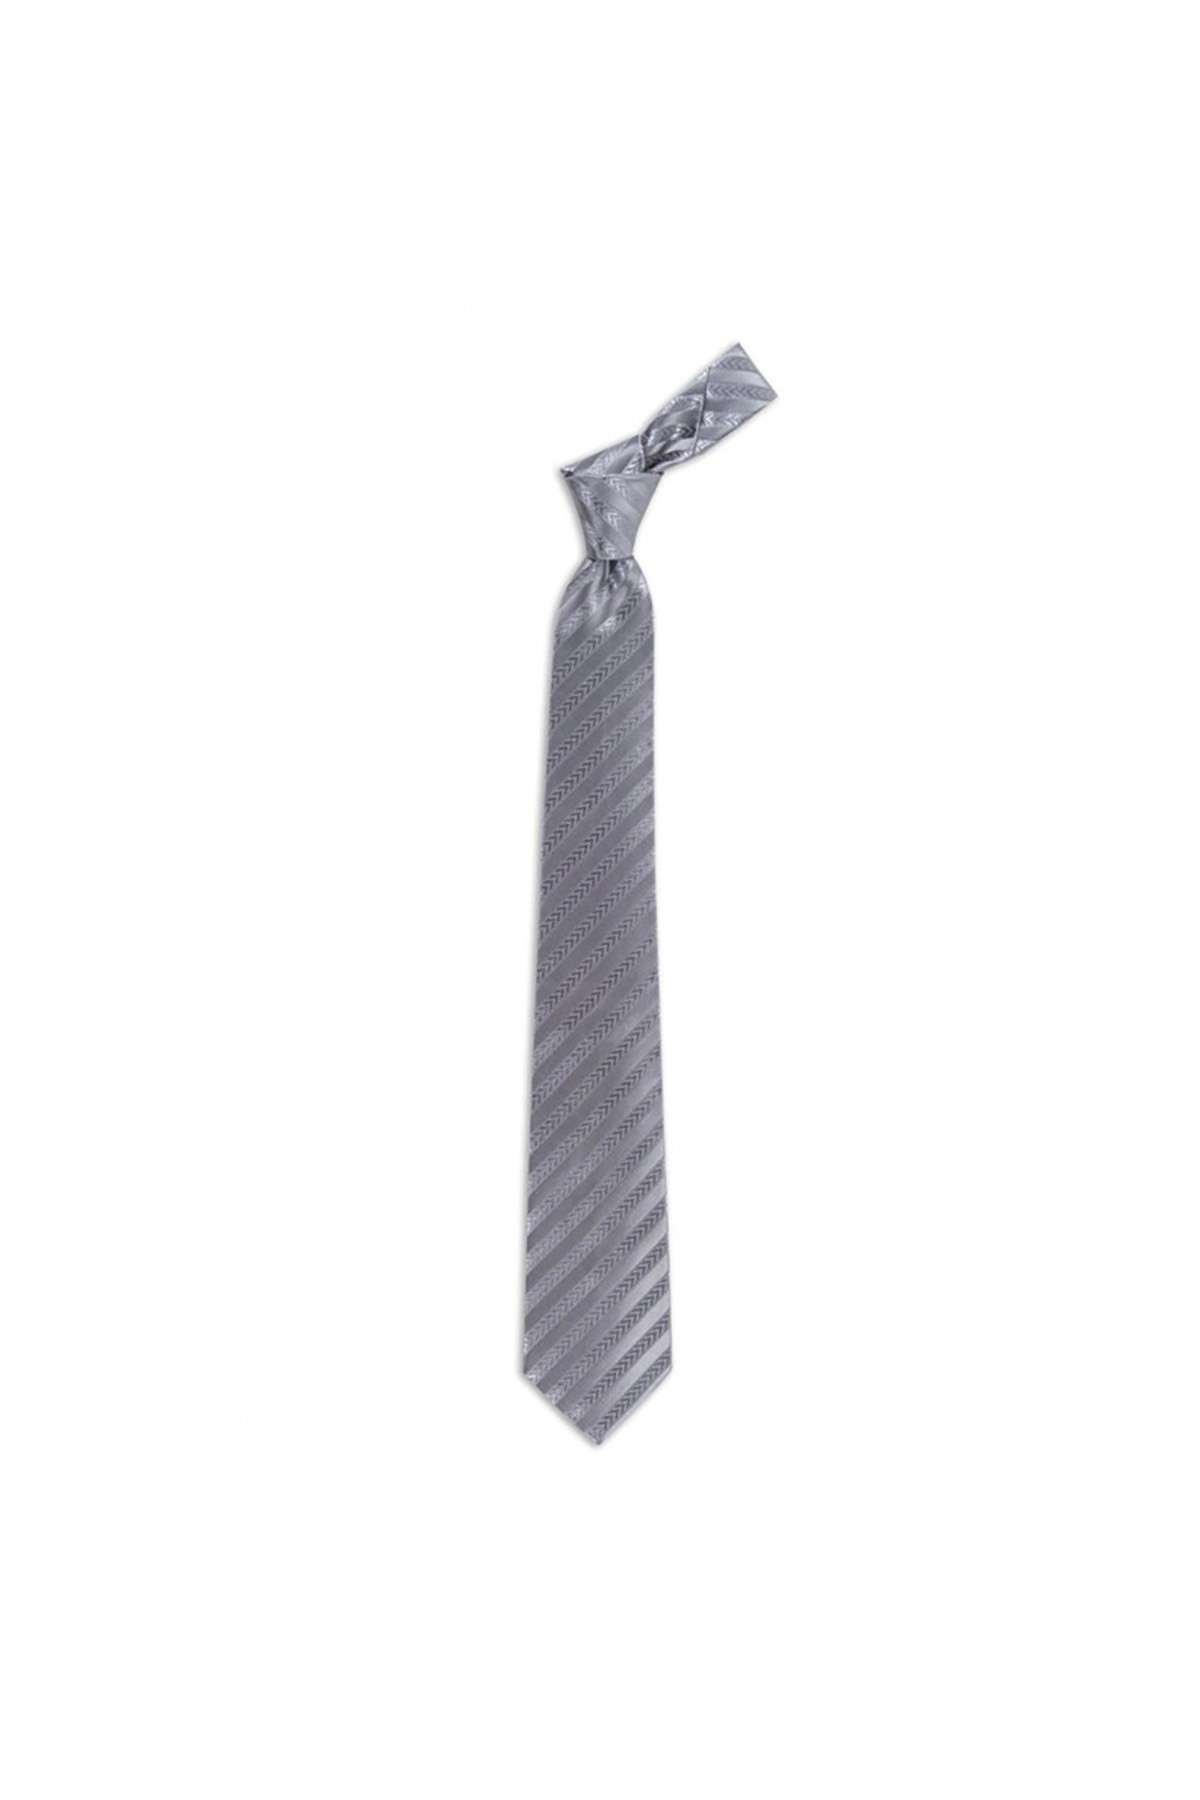 Klasik çizgili 8 cm genişliğinde düz ipek kravat